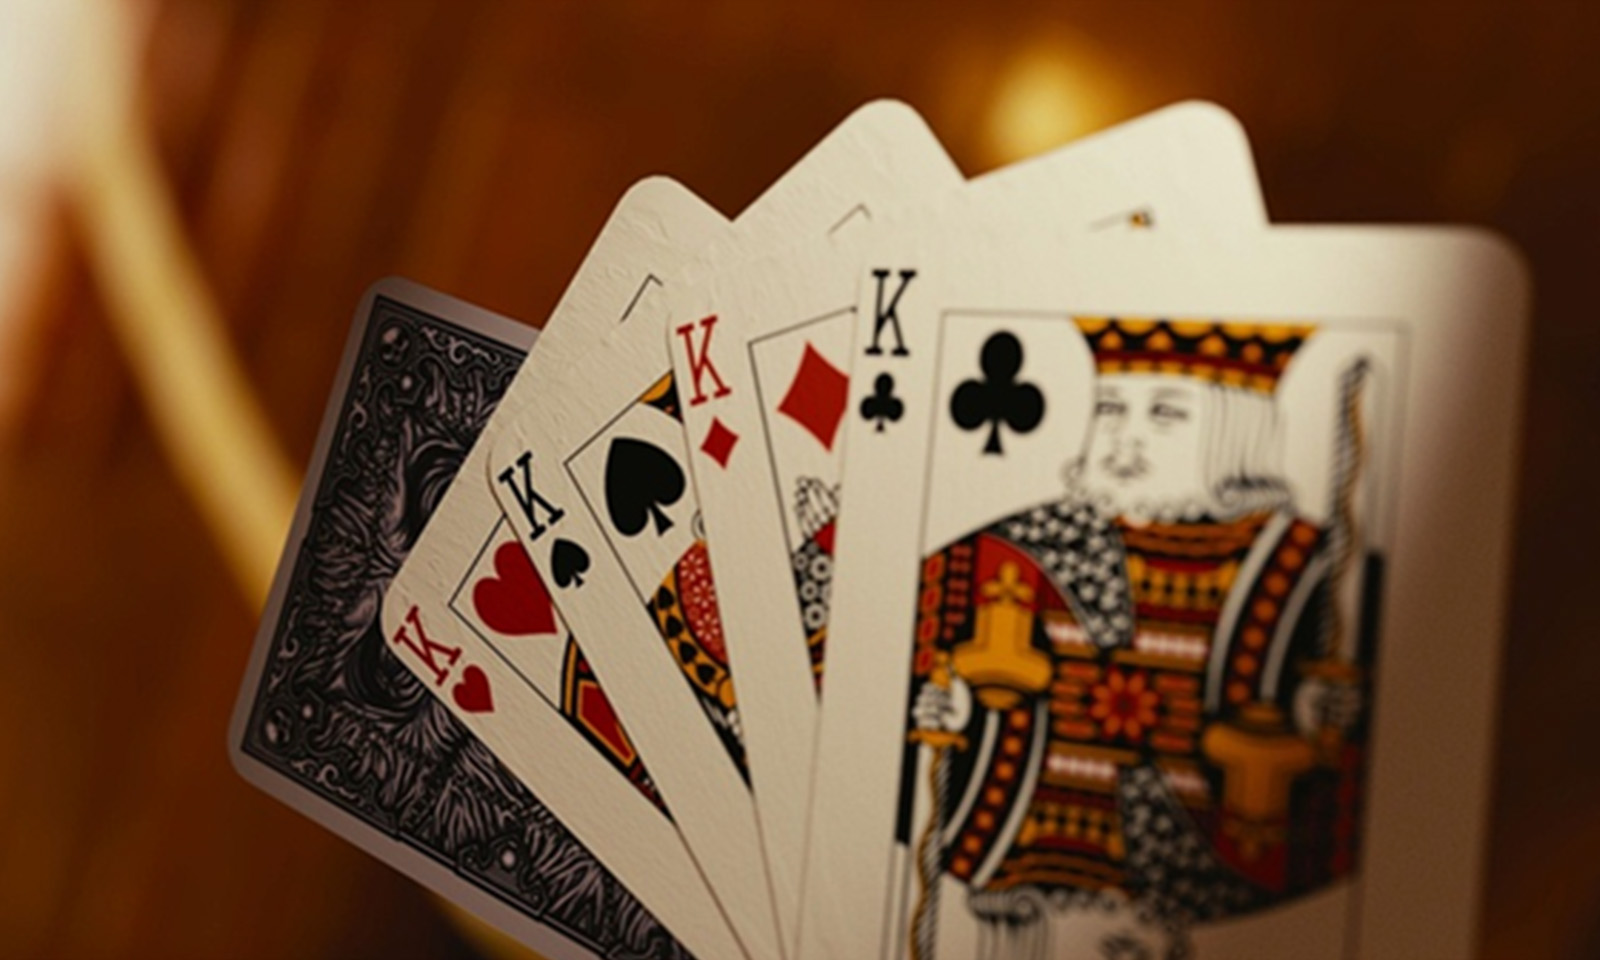 Cartas de baralho representando o Blackjack.